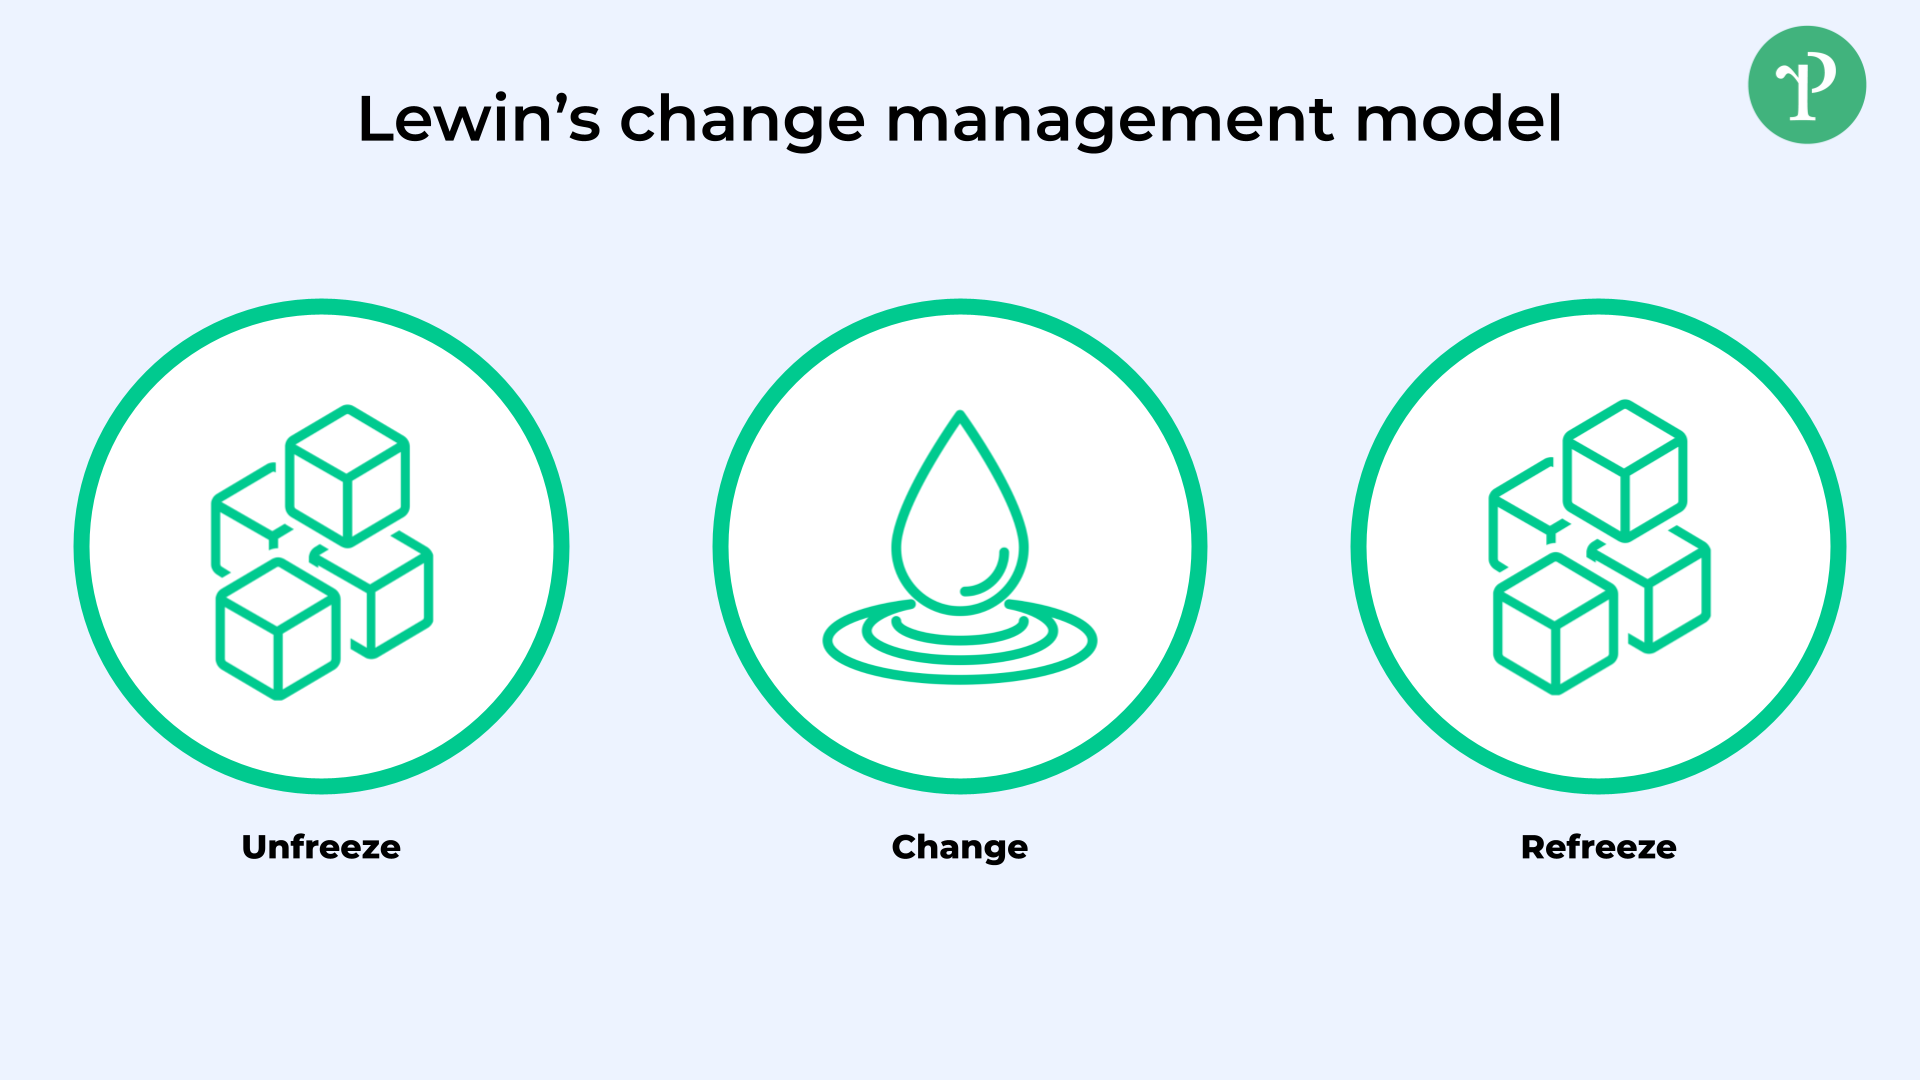 Lewins modell för förändringsledning | Right People Group